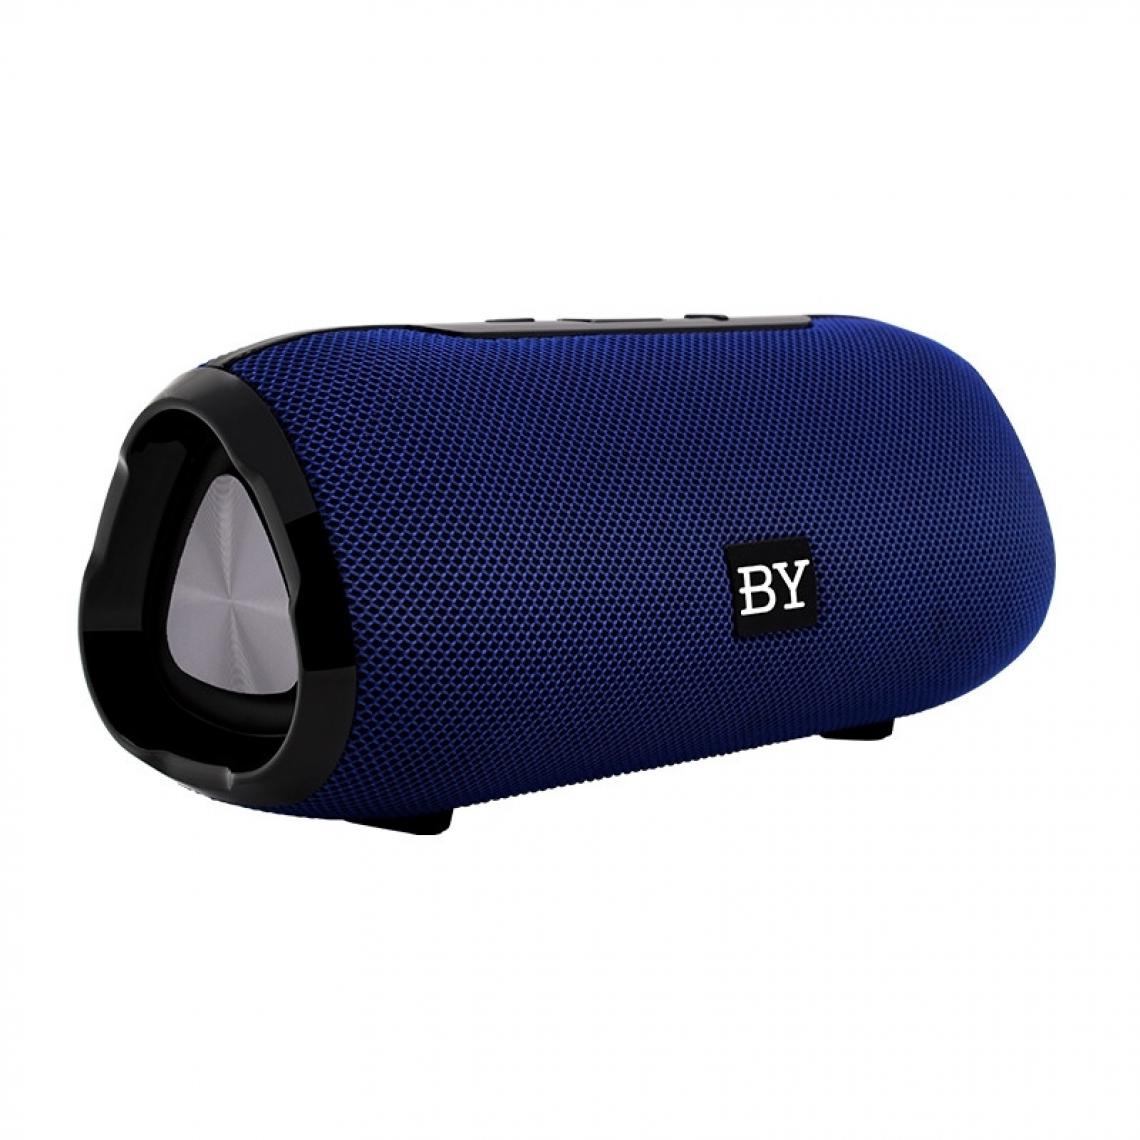 Wewoo - Enceinte Bluetooth BY Portable Haut-parleur Étanche 3D Stéréo Musique Surround Système de sonorisation extérieure Prise en charge TF AUX Bleu - Enceintes Hifi